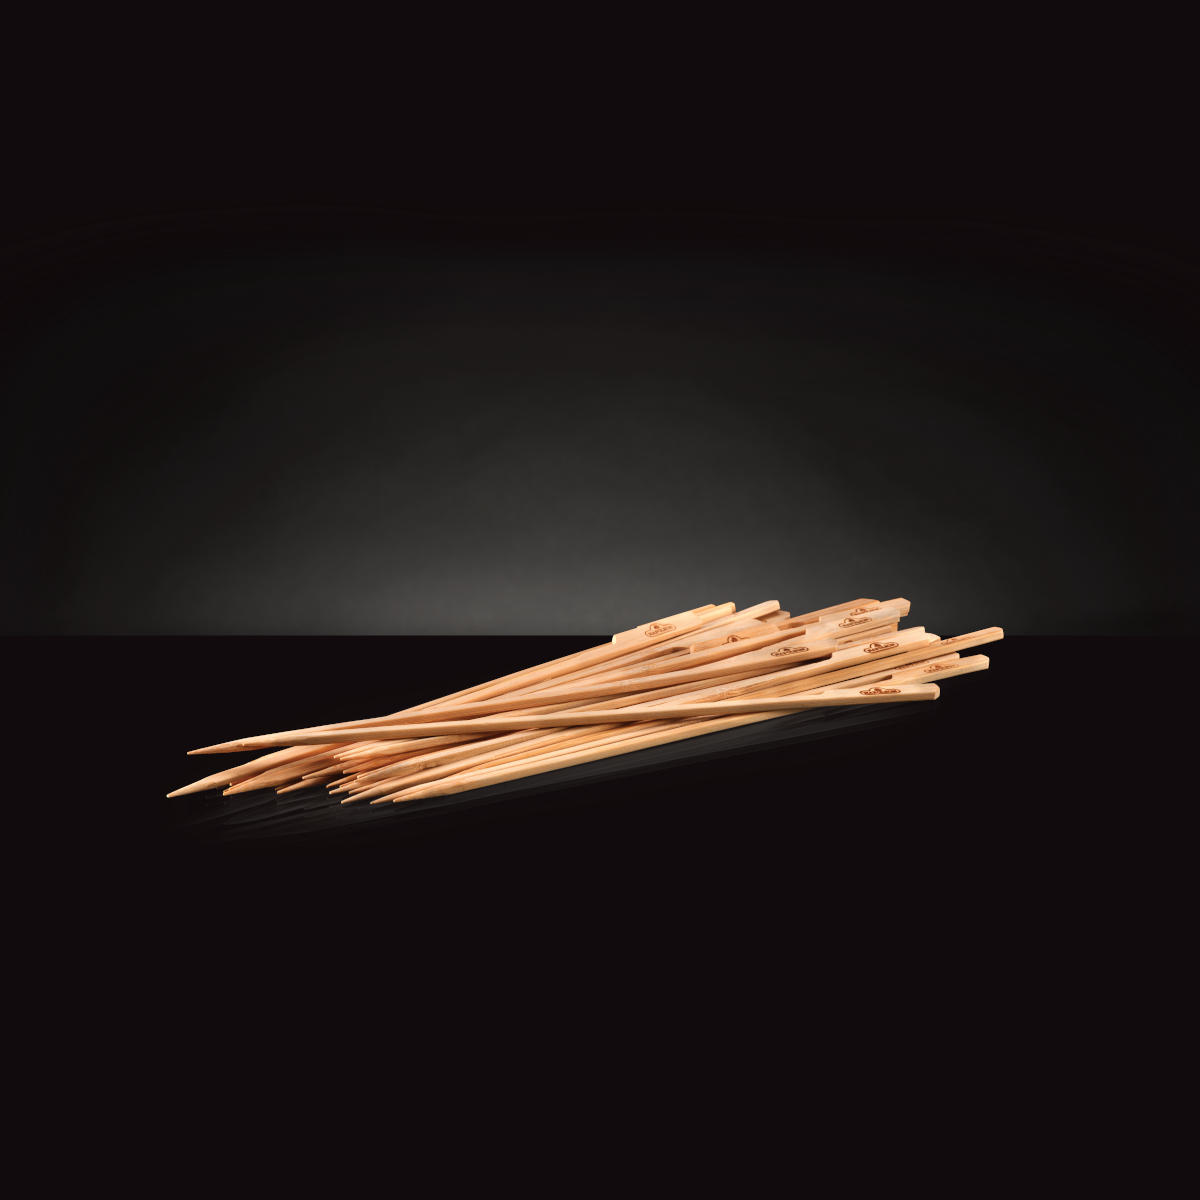 Napoleon Holz-Spieße aus Bambus, 15 cm lang, Spieße aufgehäuft